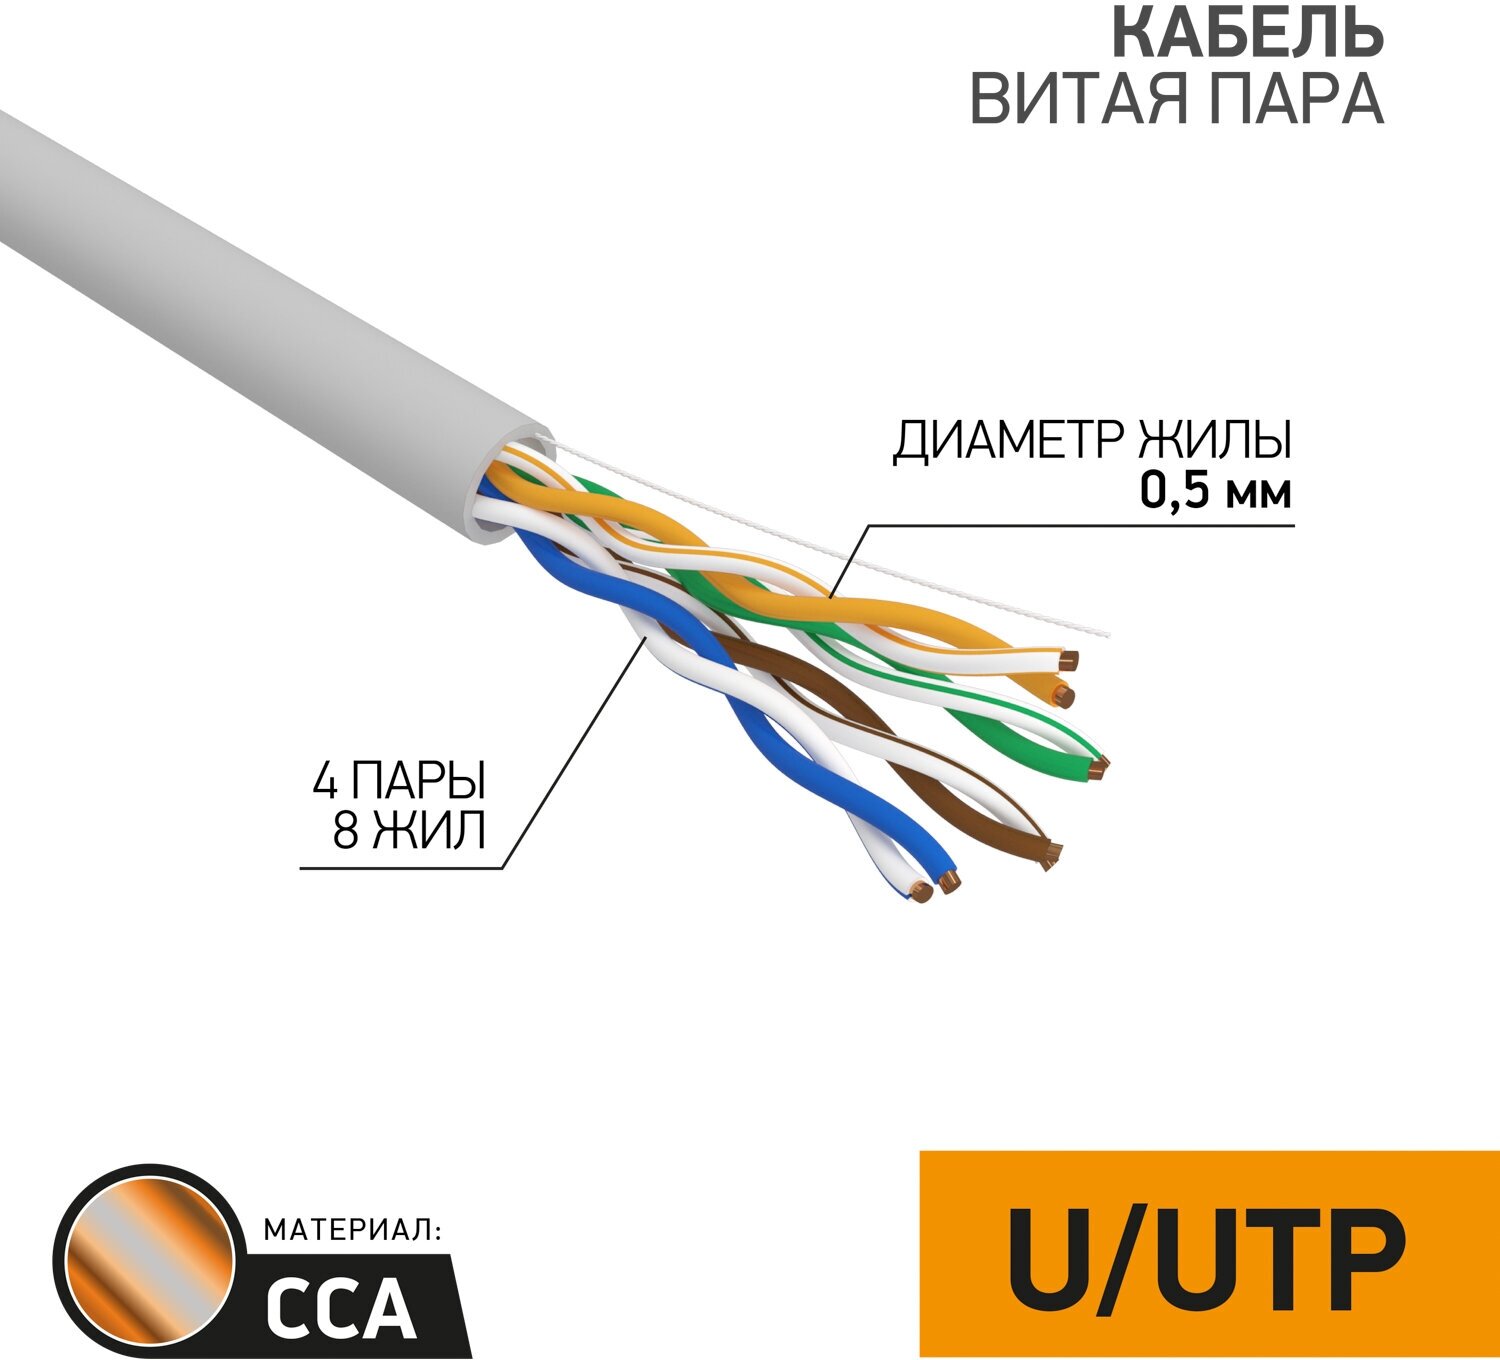 Кабель витая пара U/UTP 5e кат. 4 пары PROconnect 01-0043-3 24AWG(0.50 мм), омедненный алюминий (CCA), одножильный (solid), внутренний, PVC, серый, уп